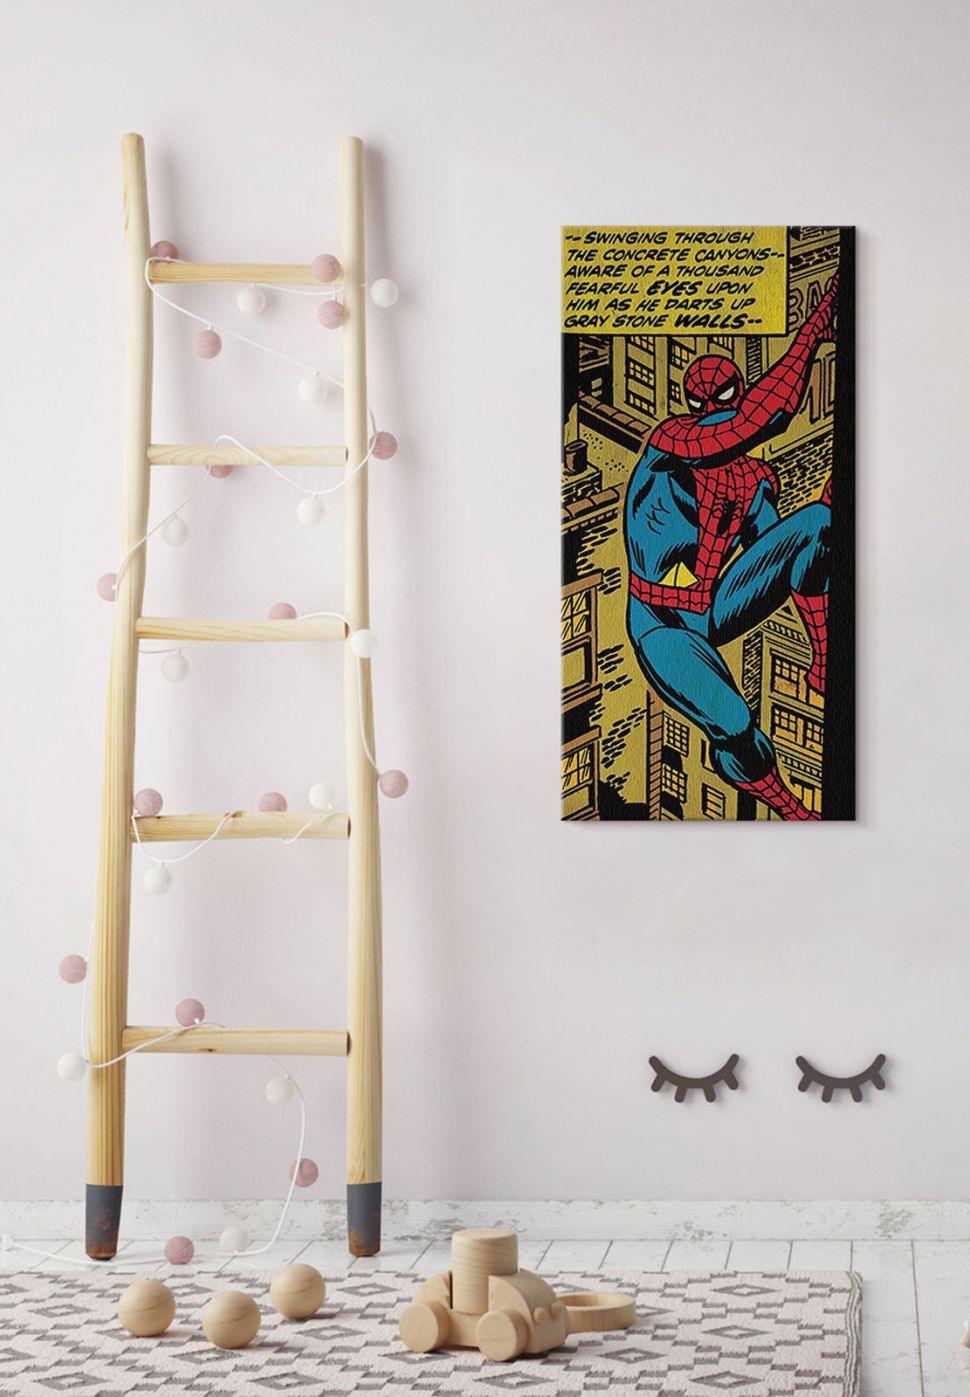 Obraz ze Spider manem powieszony na ścianie w pokoju dziecka